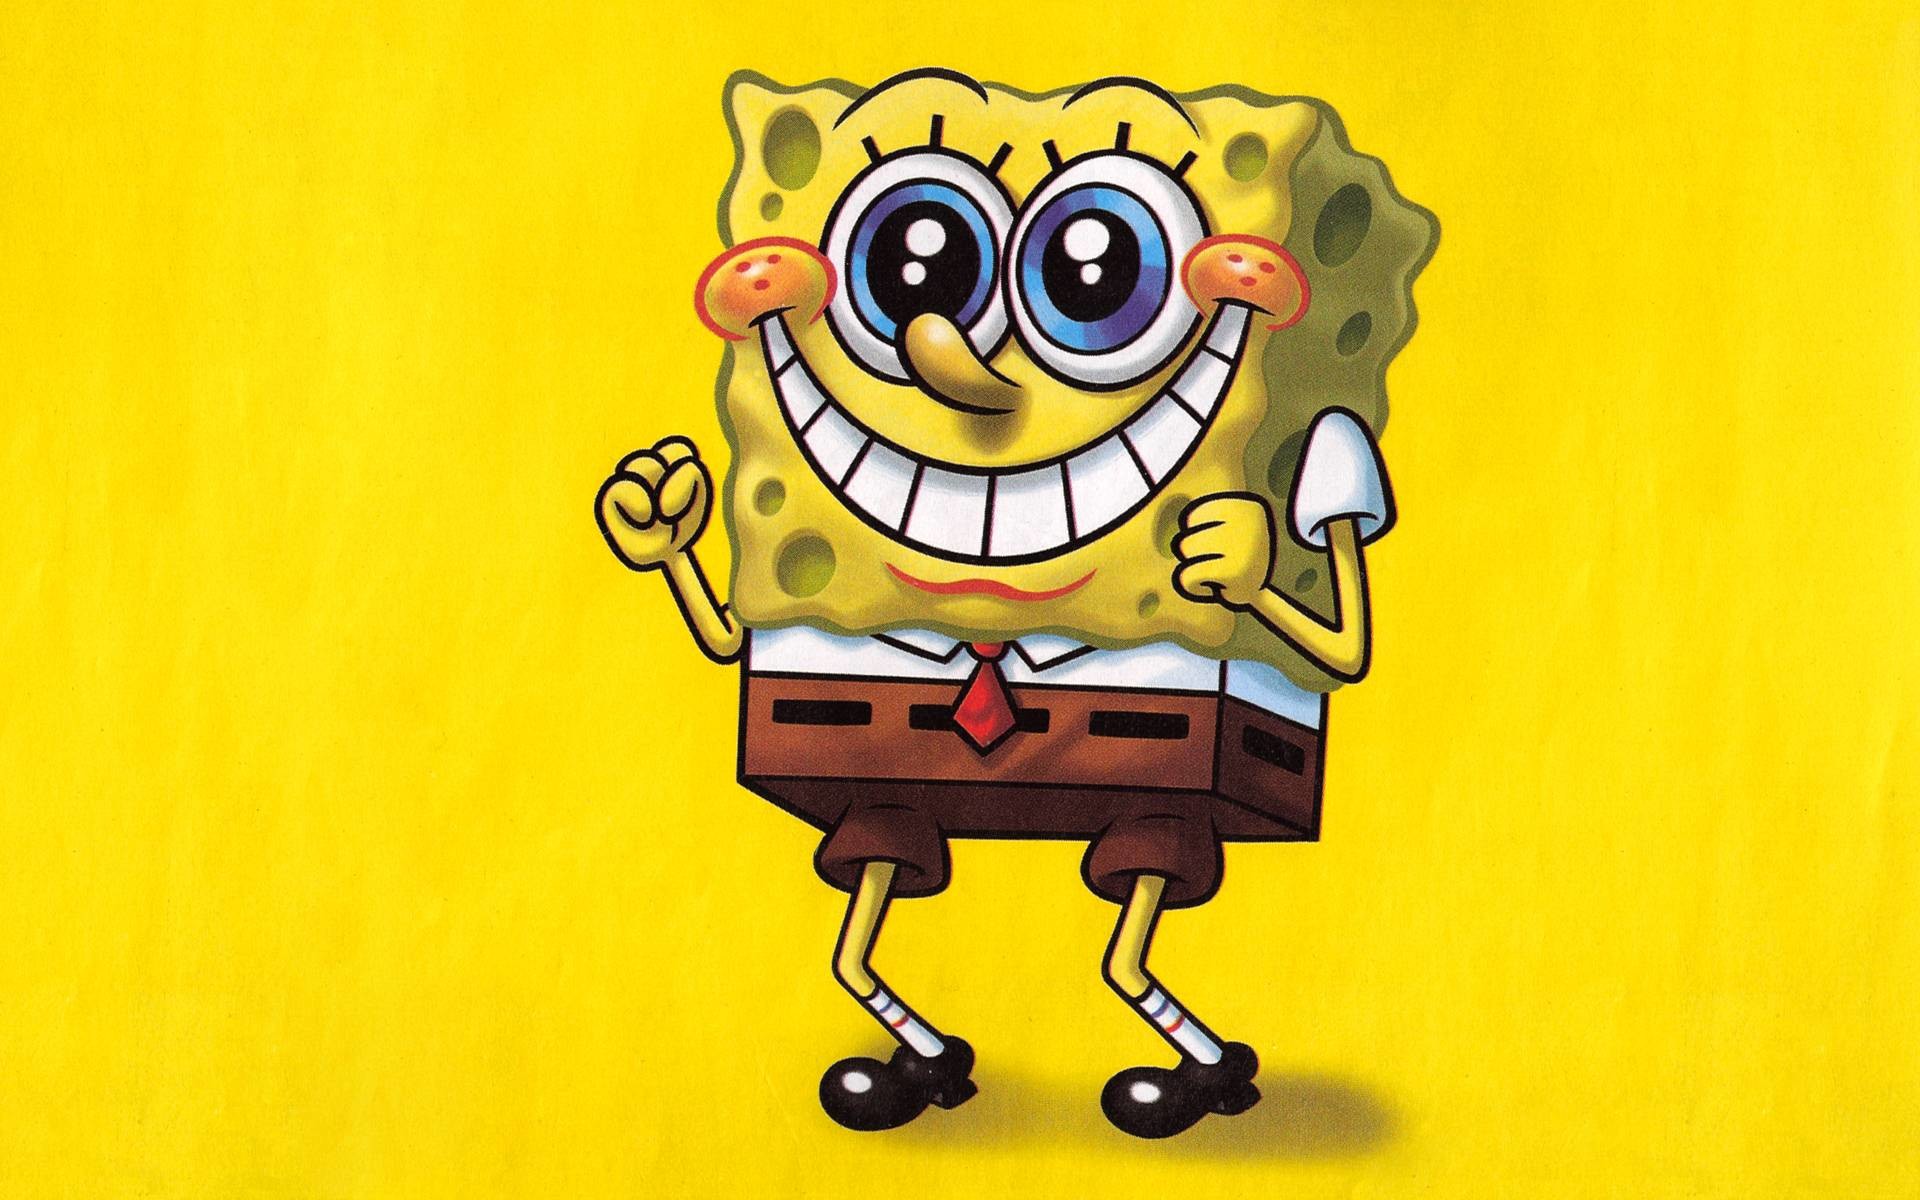 1920x1200 Spongebob Squarepants Happy Face Wallpaper | Spongebob | Pinterest .